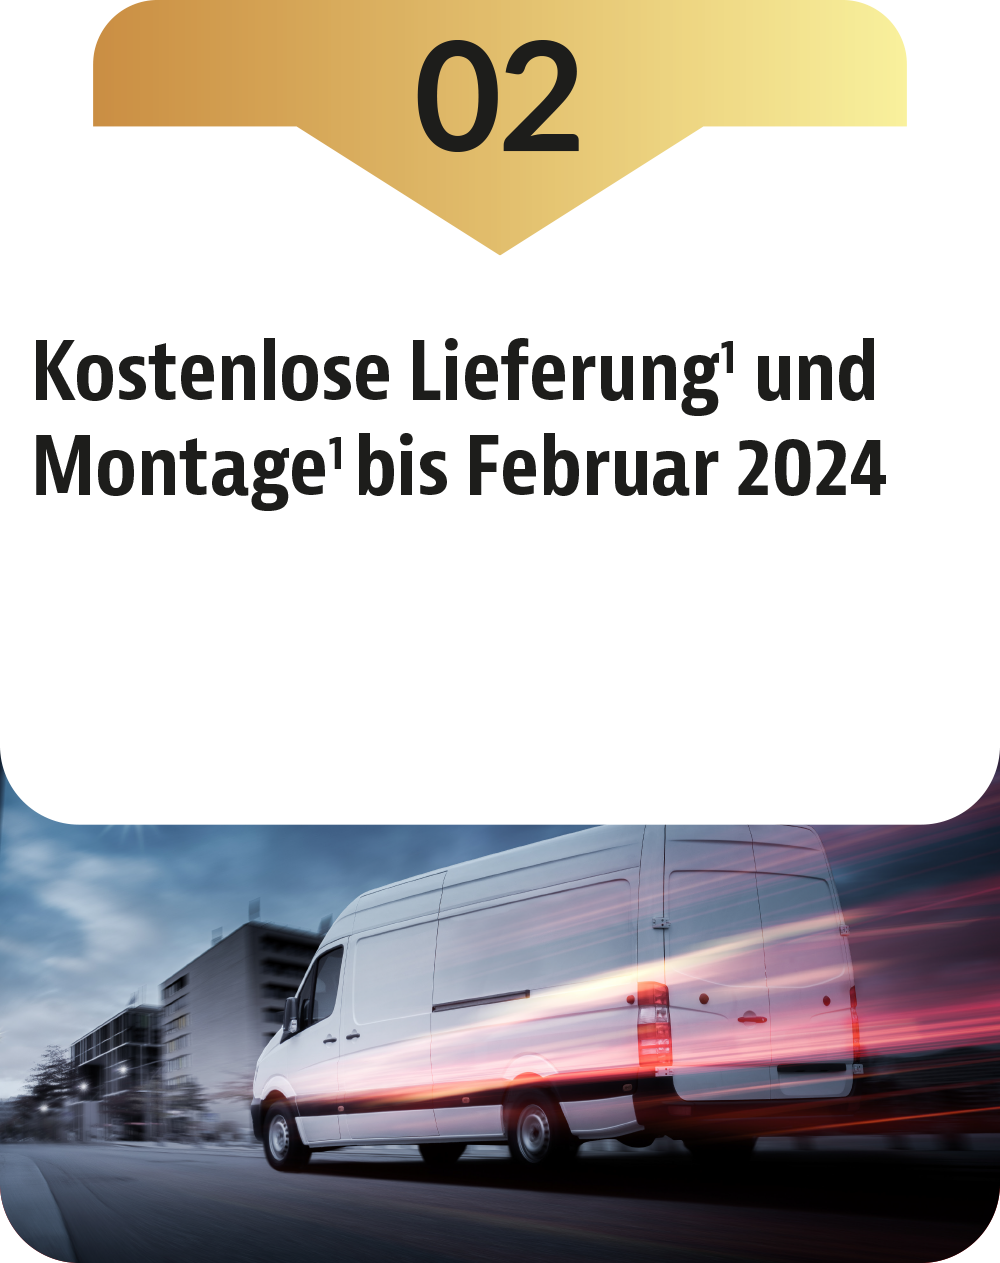 Jetzt exklusiven Vorteil sichern mit der kostenlosen Lieferung und Montage bis Februar 2024!